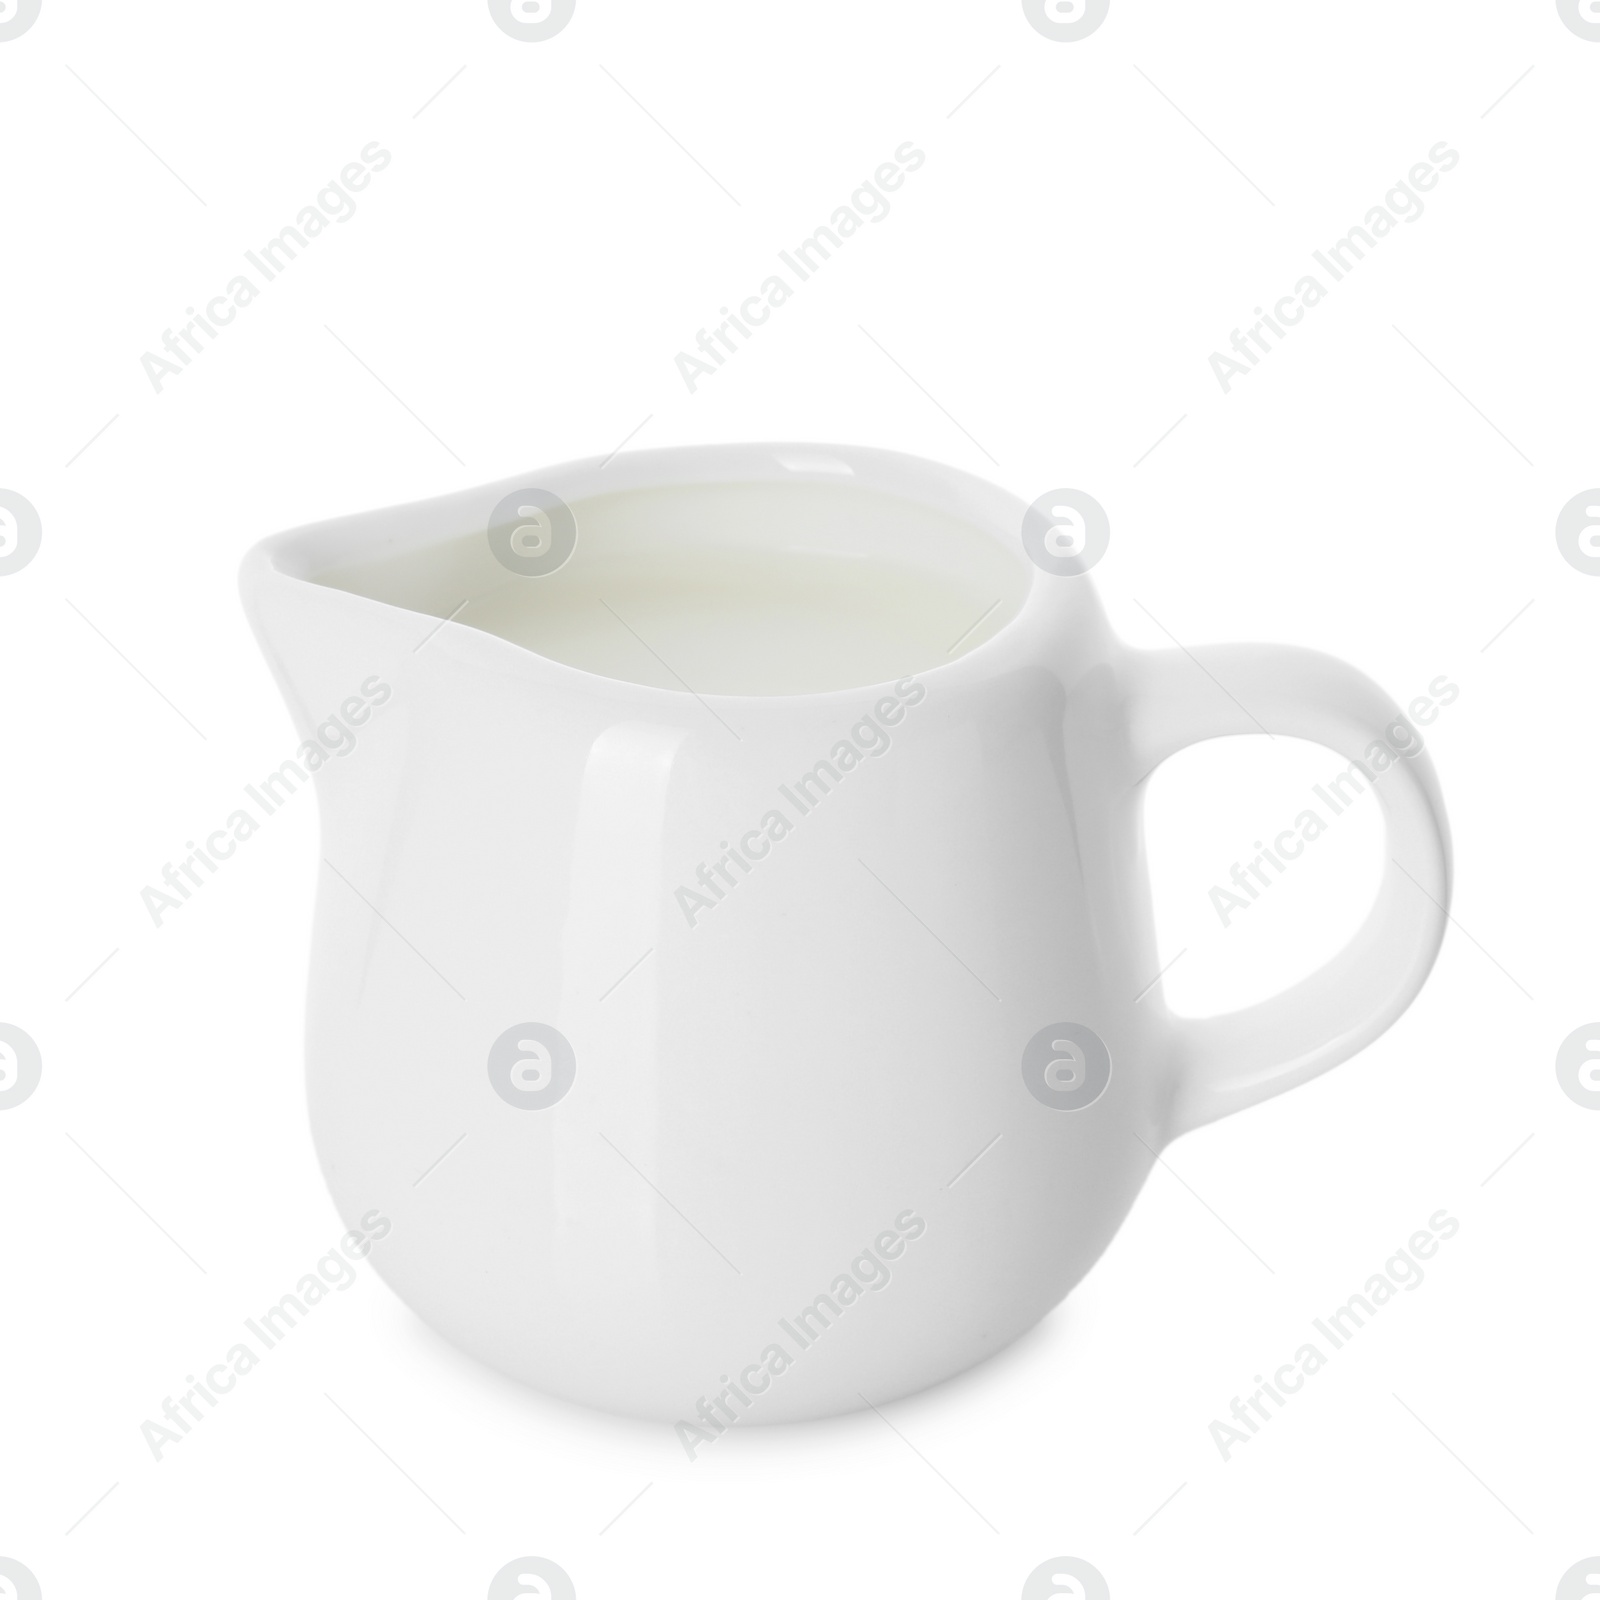 Photo of Jug of fresh milk isolated on white